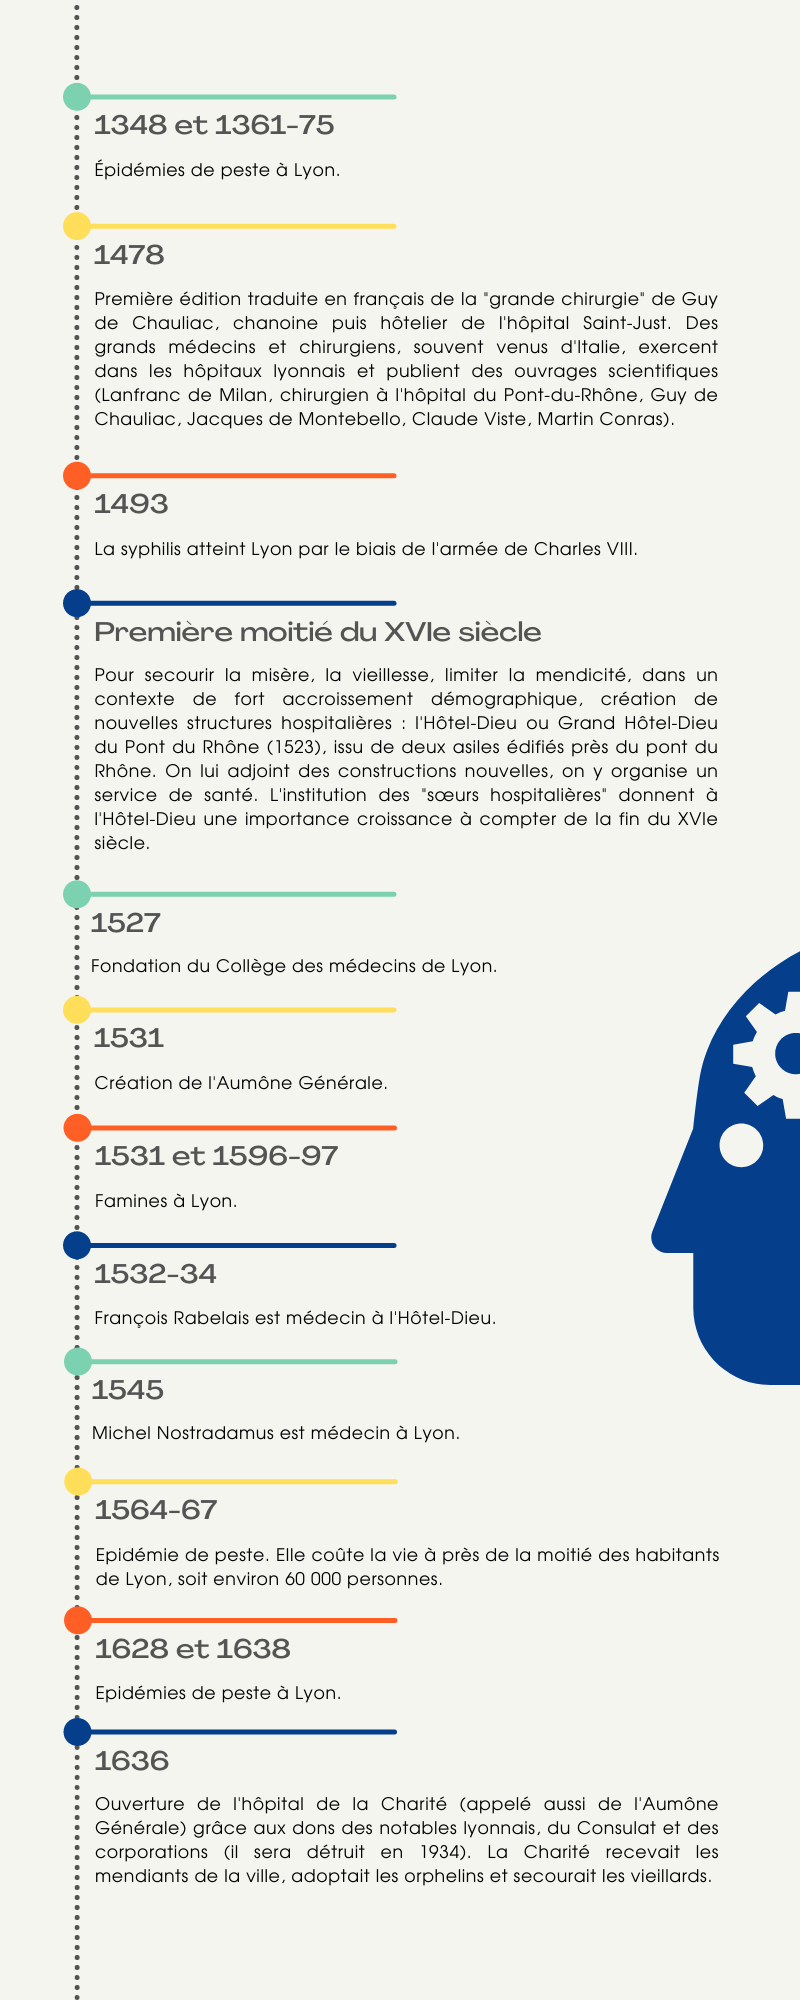 Chronologie de l'histoire de la santé à Lyon de 1348 à 1636.